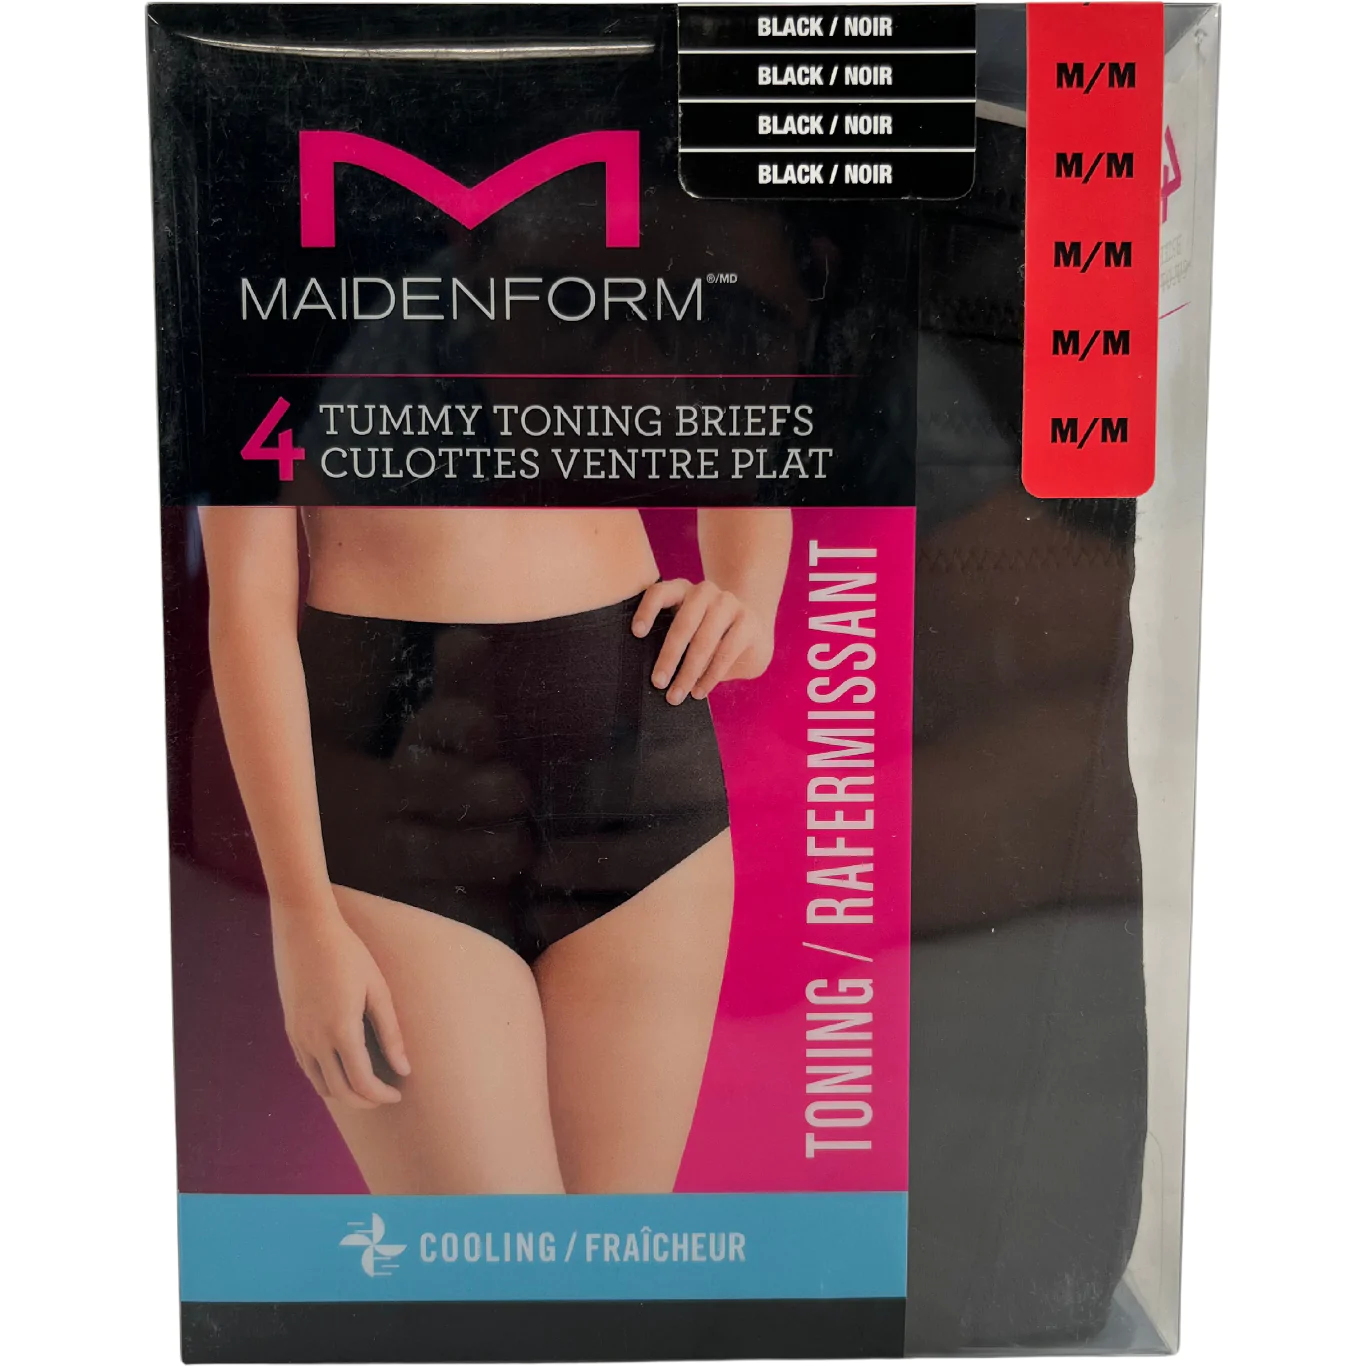 Period Underwear - at Maidenform